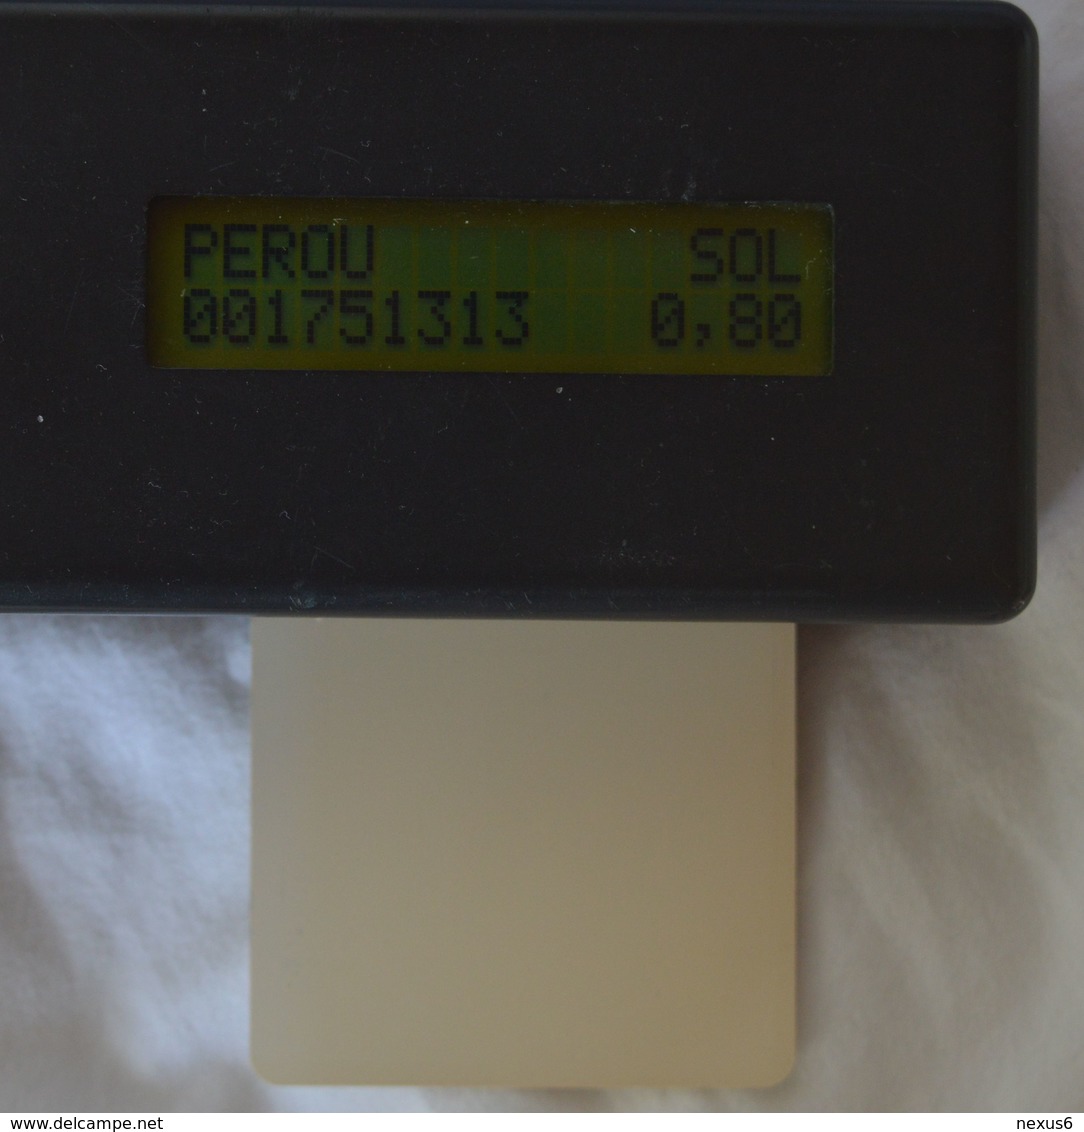 Peru - Telepoint White Prueba Test Card 10Sol, Used (check Photos!) - Pérou